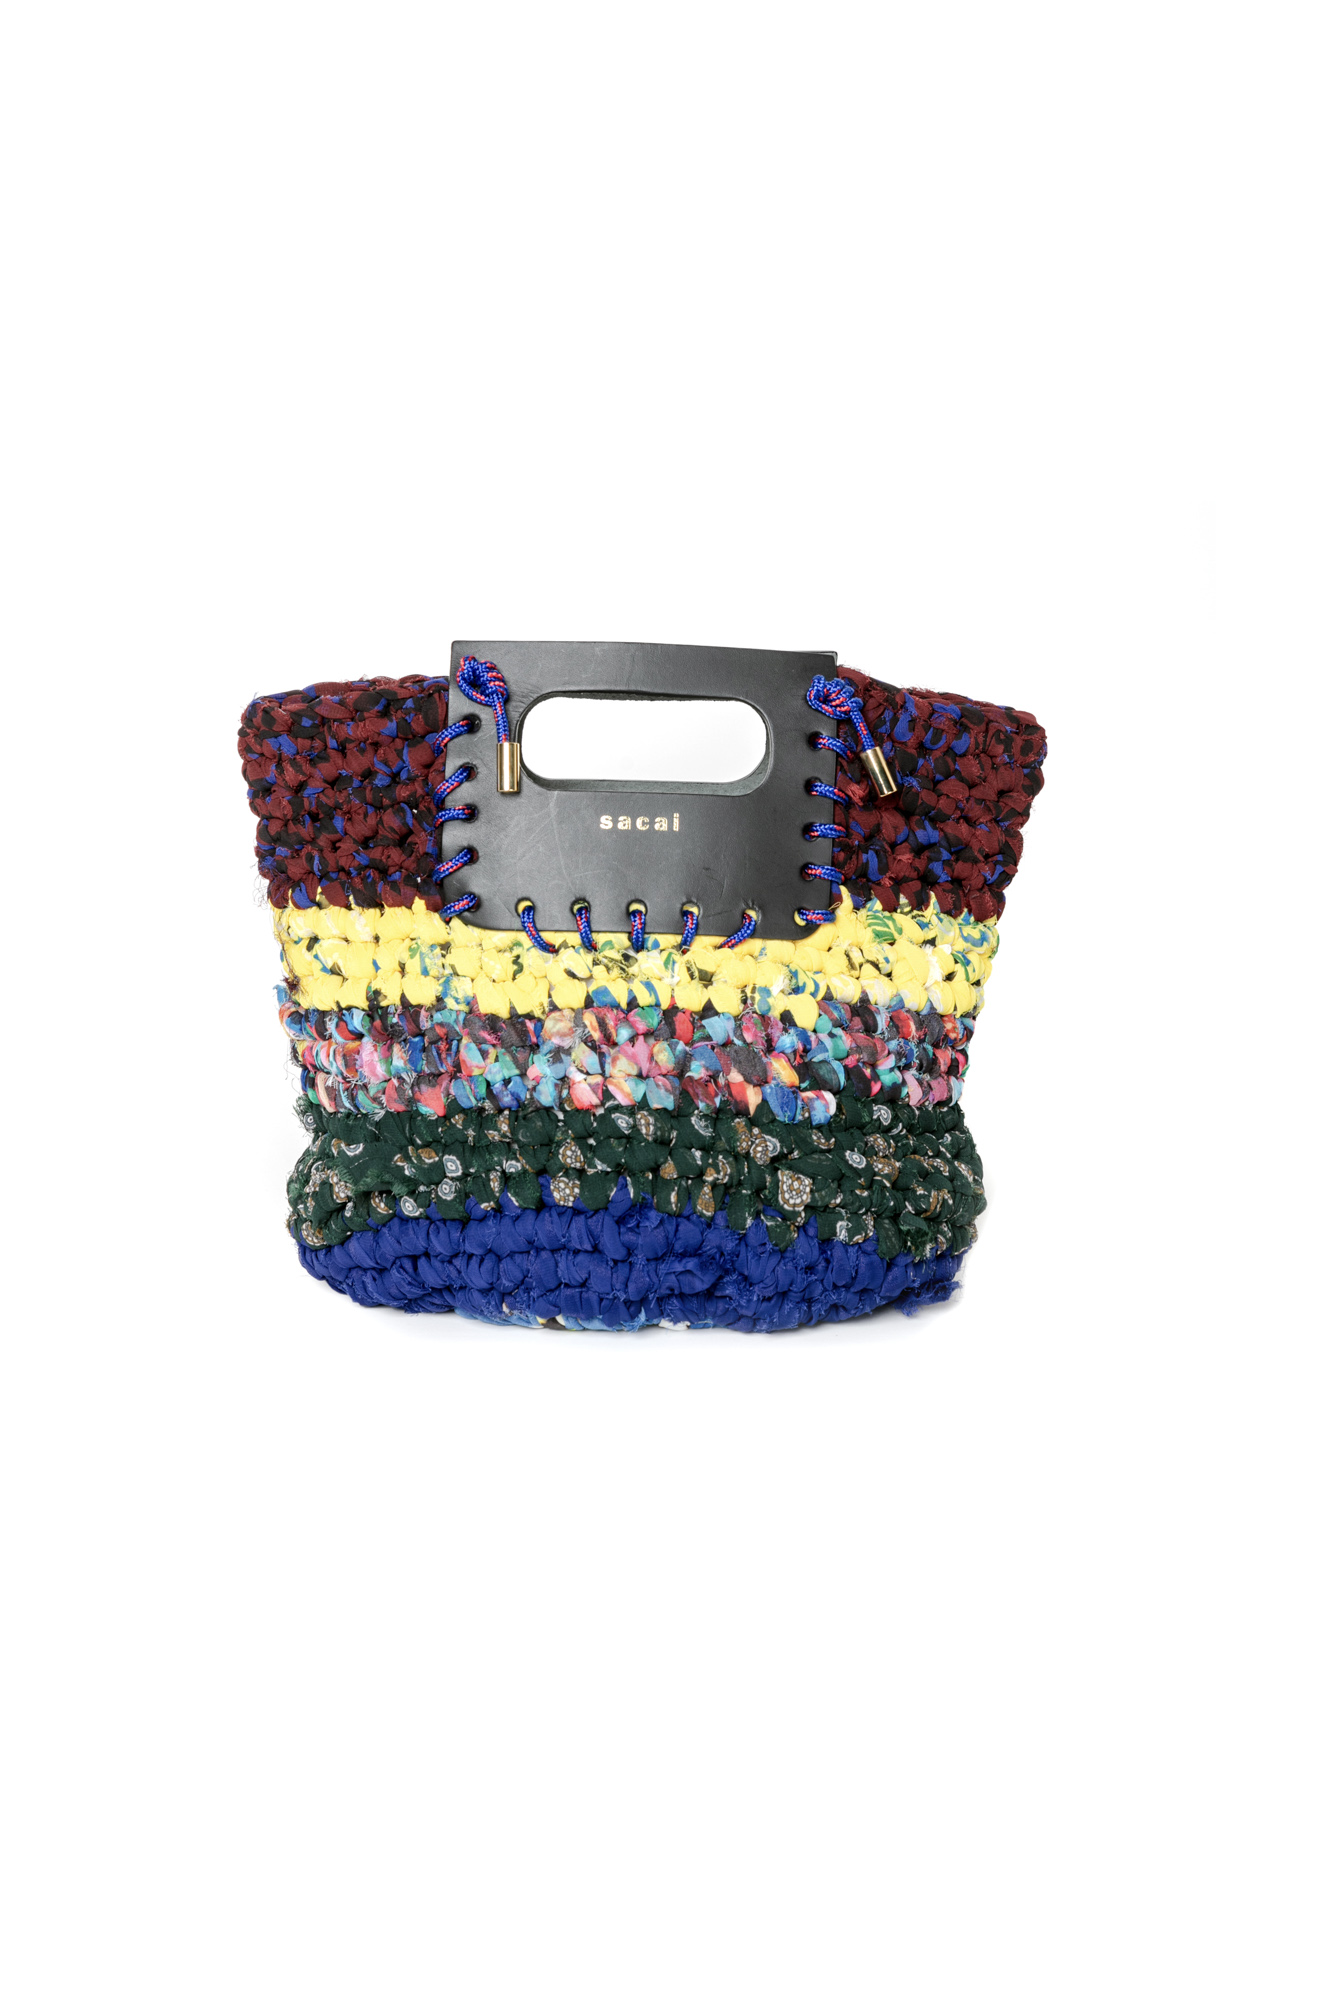 サカイ」が今年もホリデーコレクションを発表、手編みのクロシェット